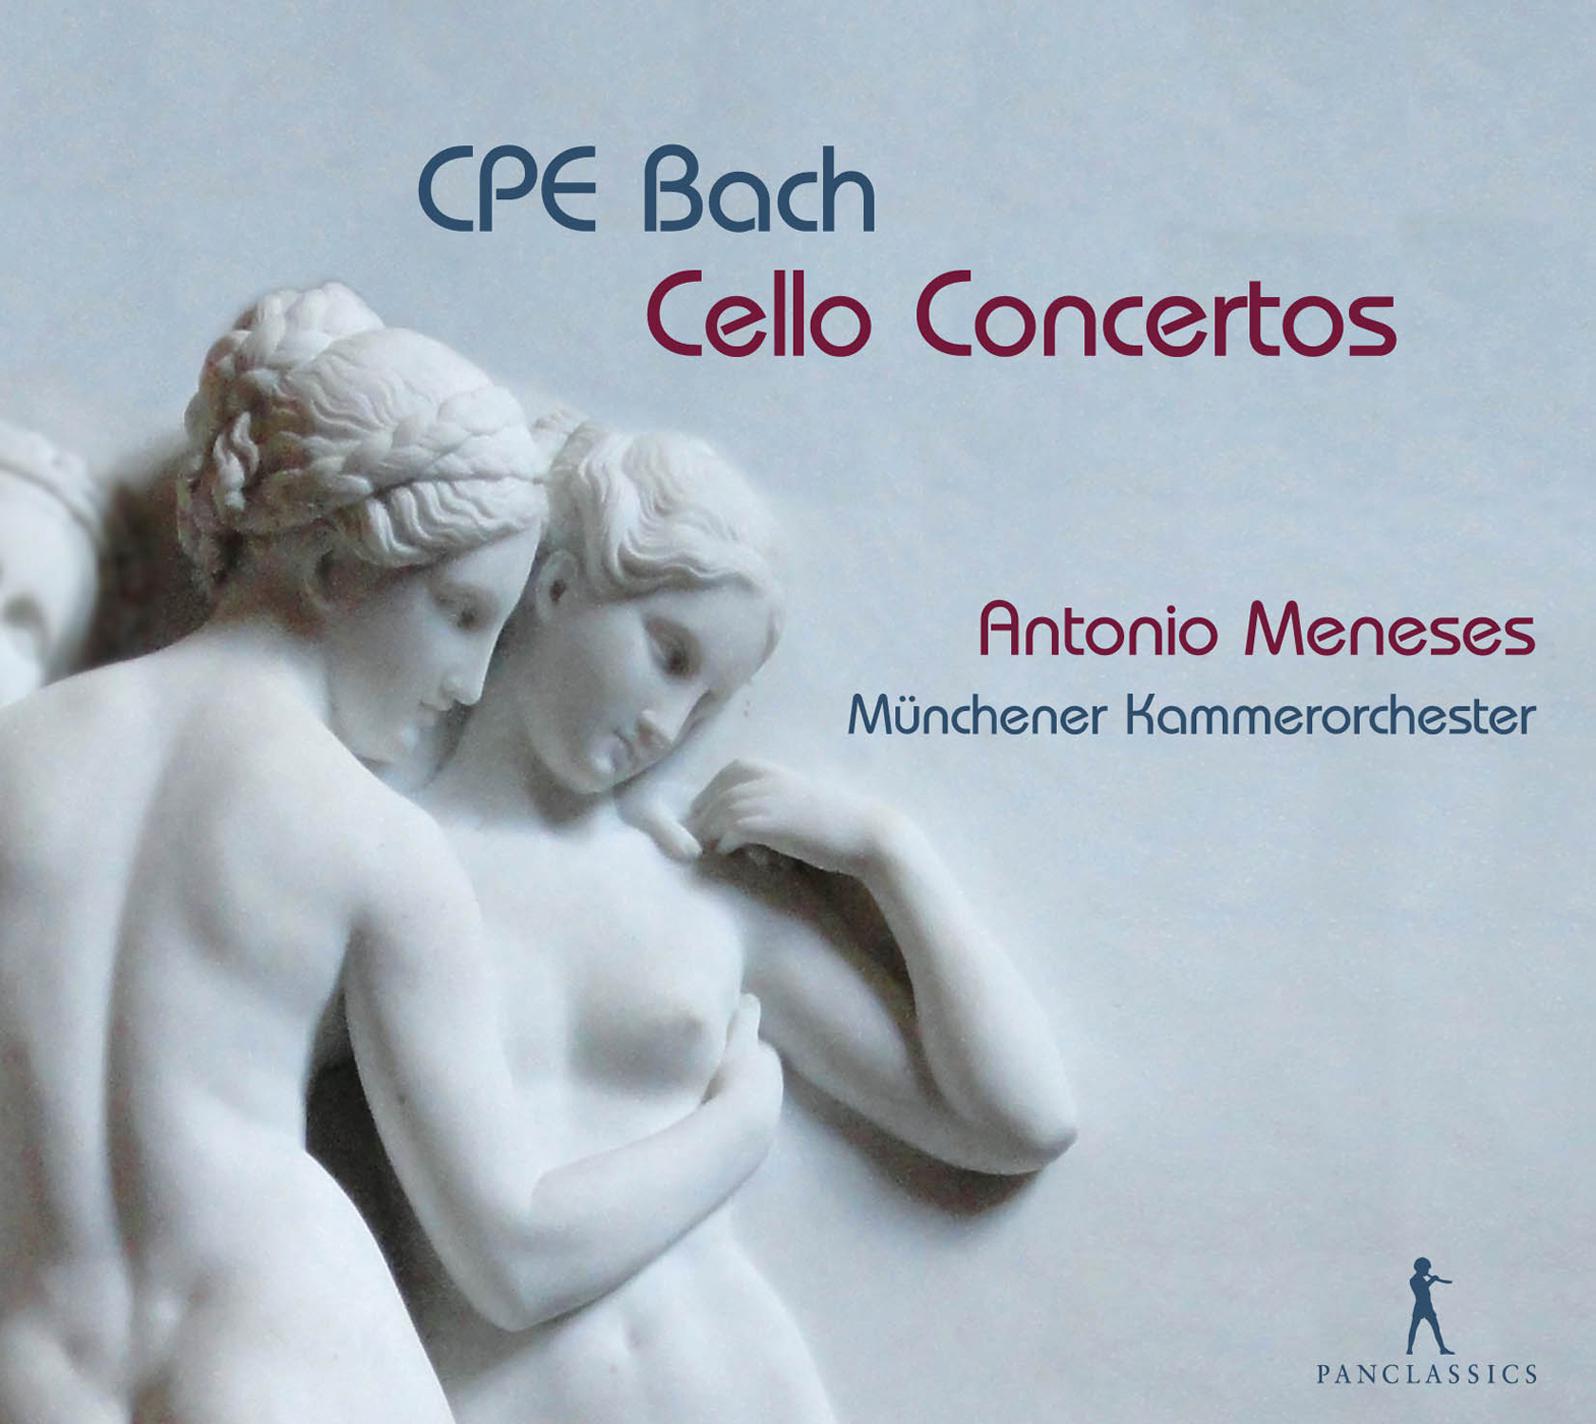 Cello Concerto in A Minor, Wq. 170, H. 432: III. Allegro assai